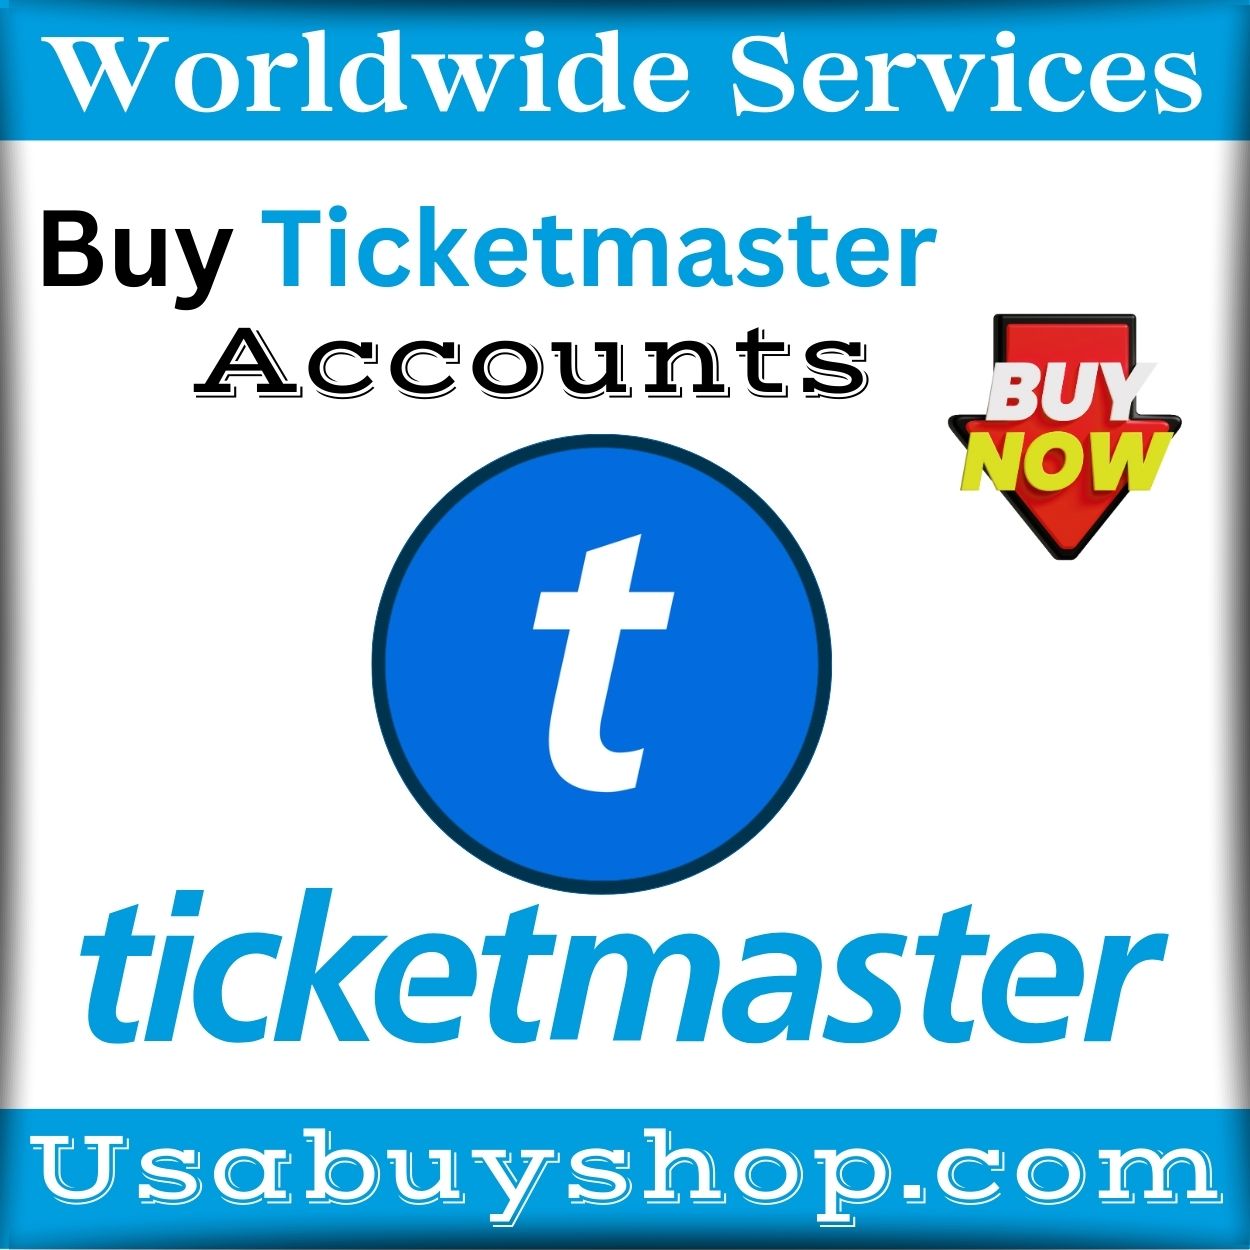 Buy Ticketmaster Accounts -100% PVA & Email Verified Accounts